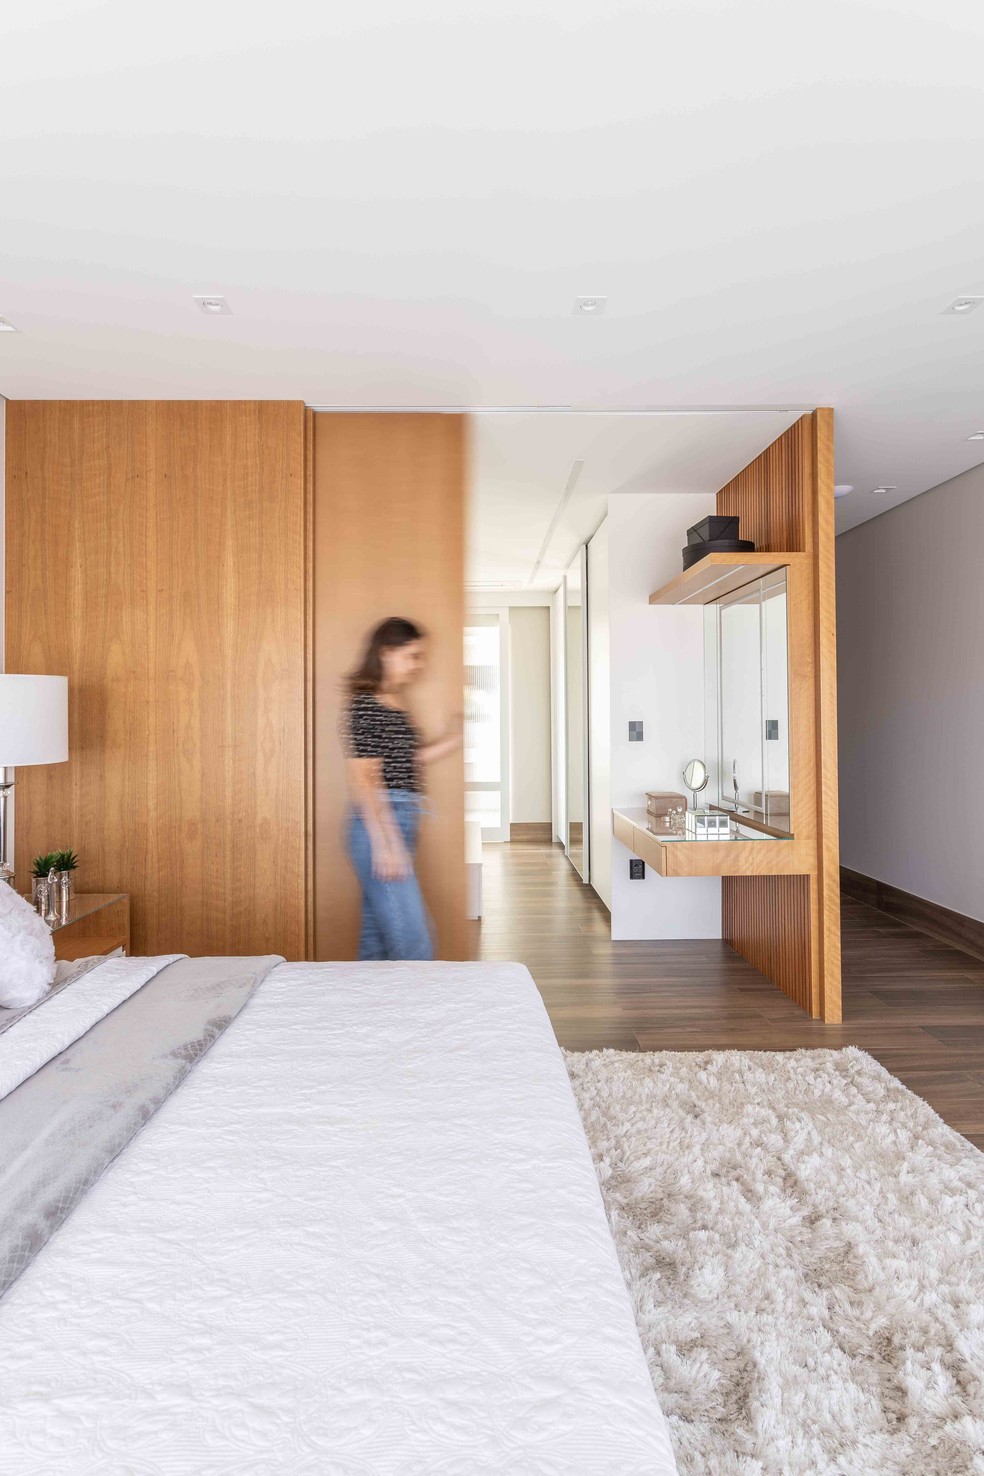 Detalhe dos painéis de madeira que separam closet do dormitório — Foto: Leandro Moraes